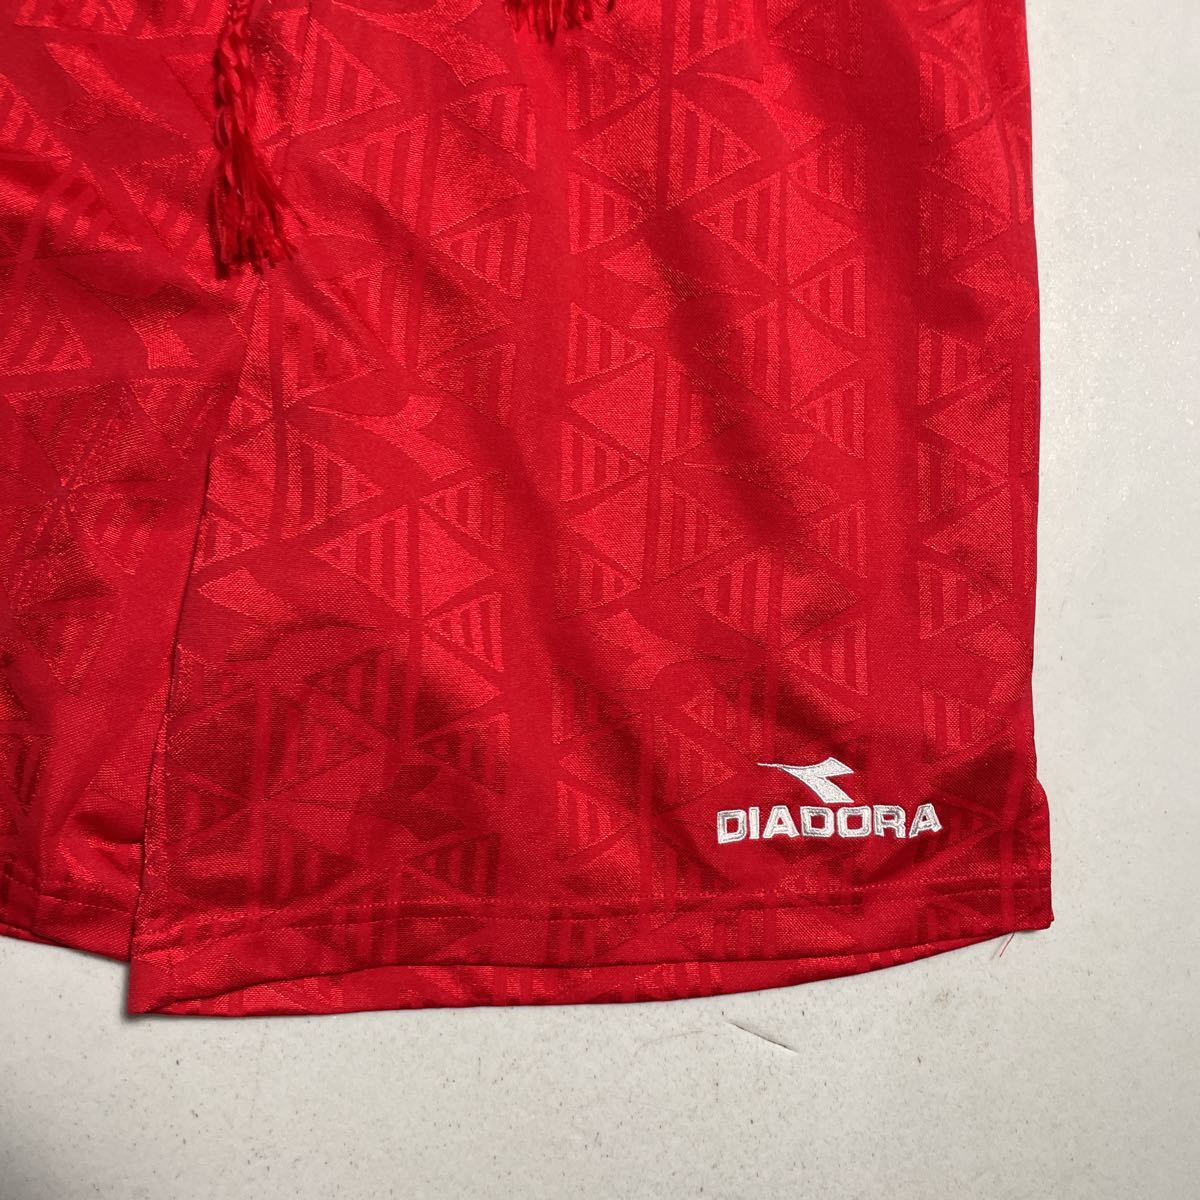 ディアドラ DIADORA 赤 レッド 刺繍ロゴ サッカー トレーニング用 サッカーパンツ Lサイズの画像3